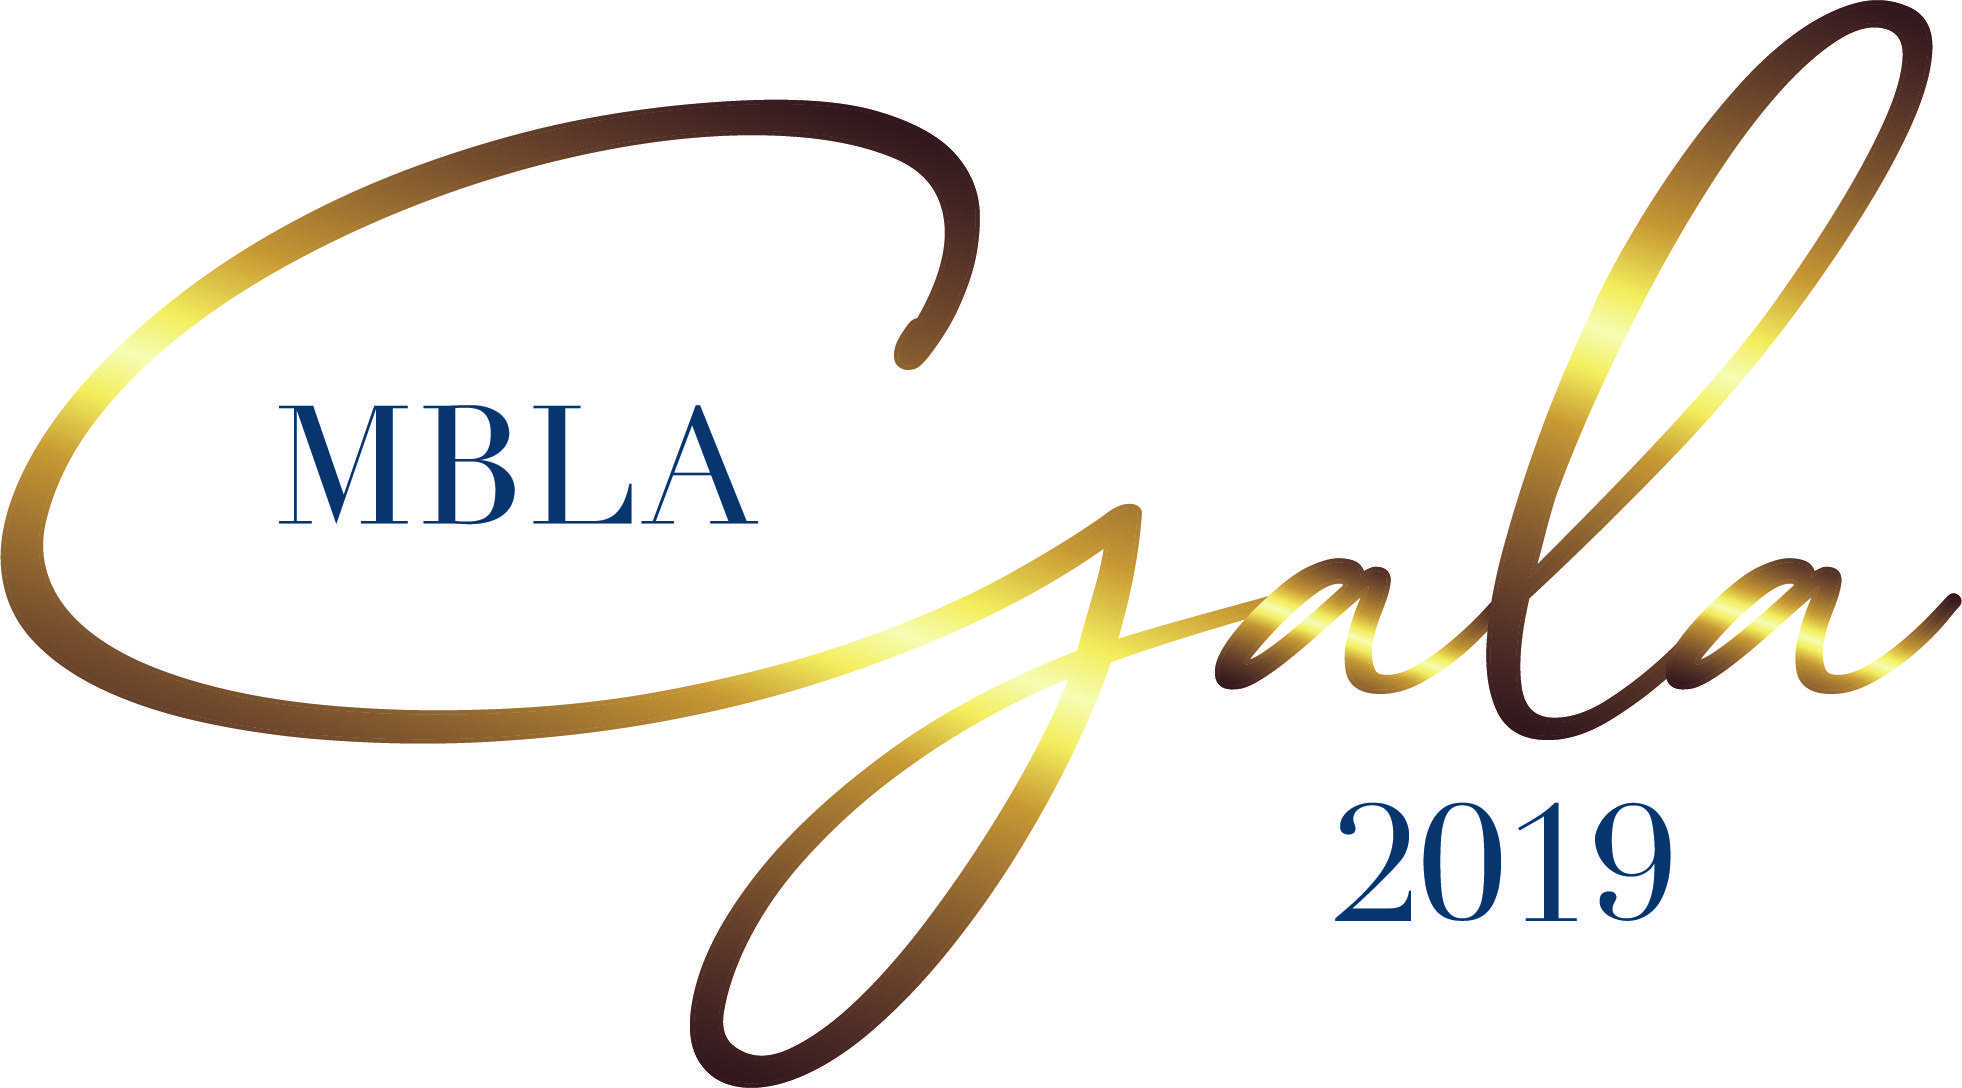 Gala Logo - MBLA Annual Gala 2